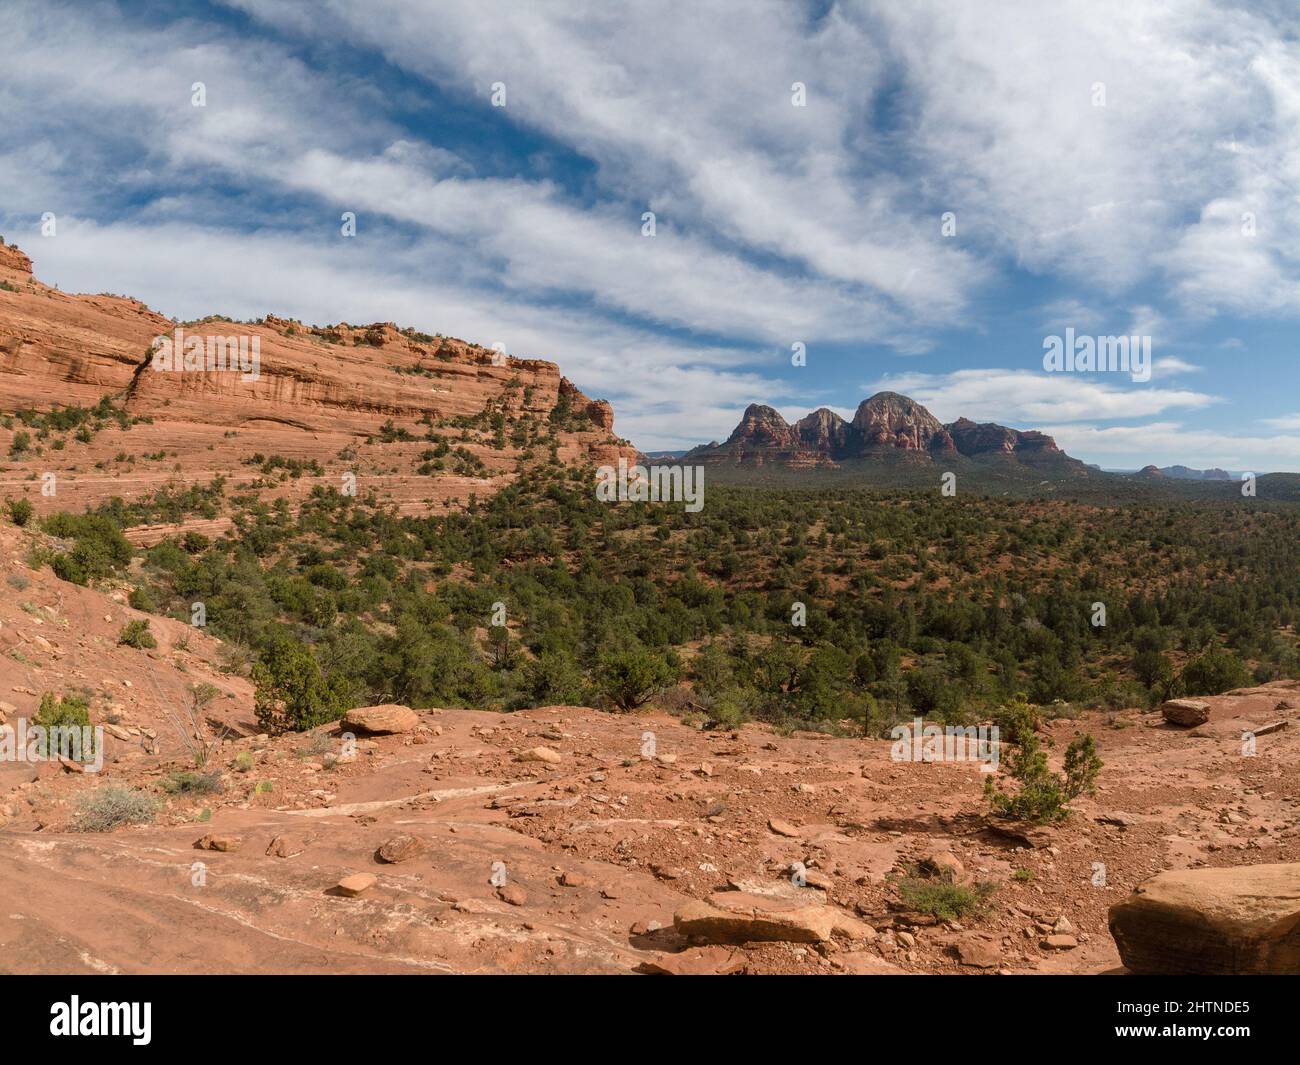 Grande vista delle formazioni rocciose e di un paesaggio desertico pieno di cespugli. Foto Stock